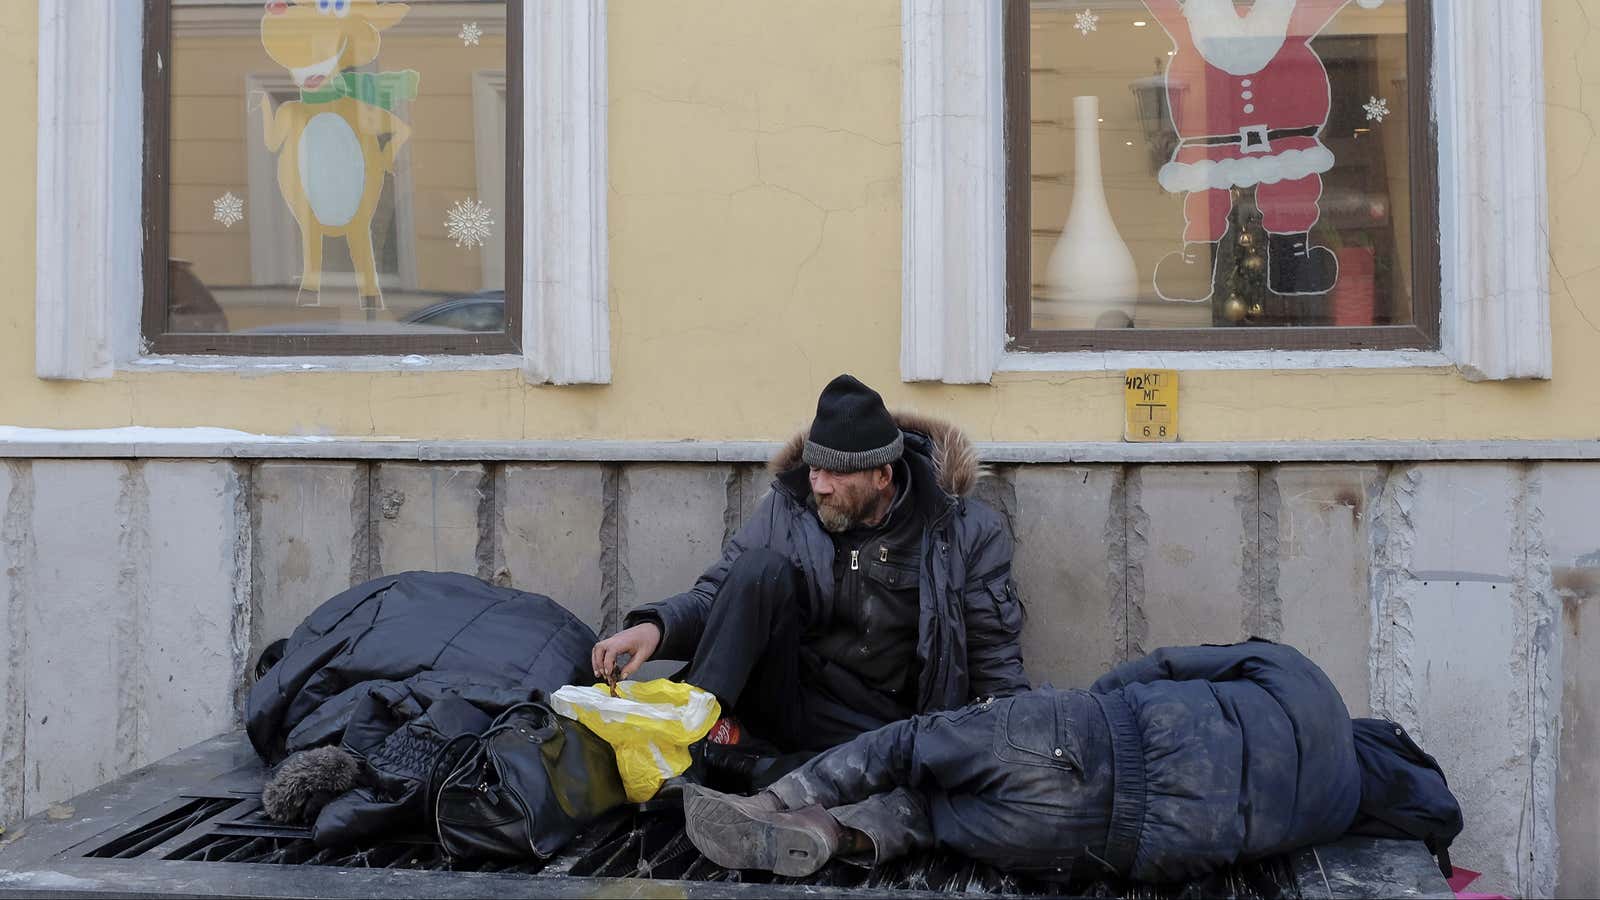 Moscow homeless get temporary reprieve.